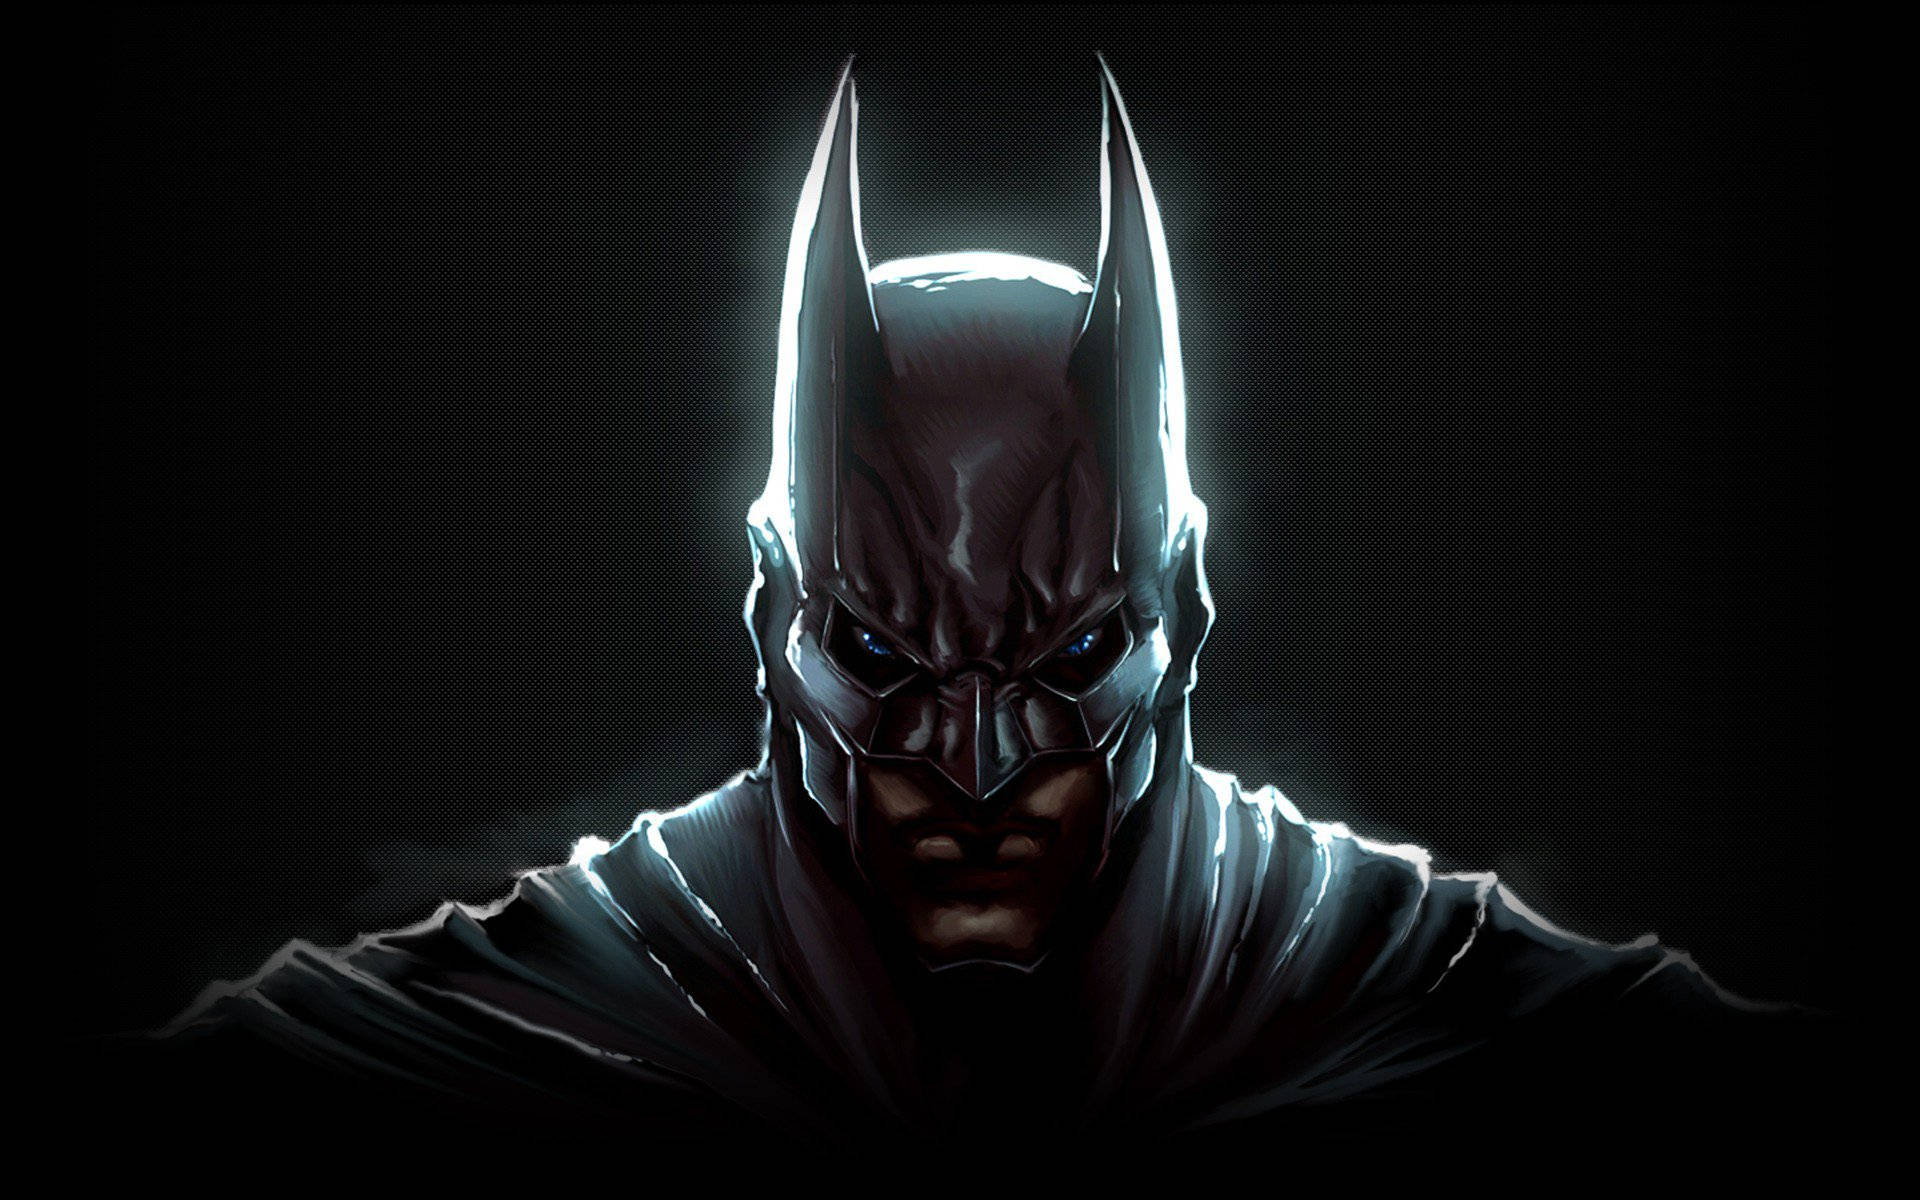 The Dark Knight Digital Art